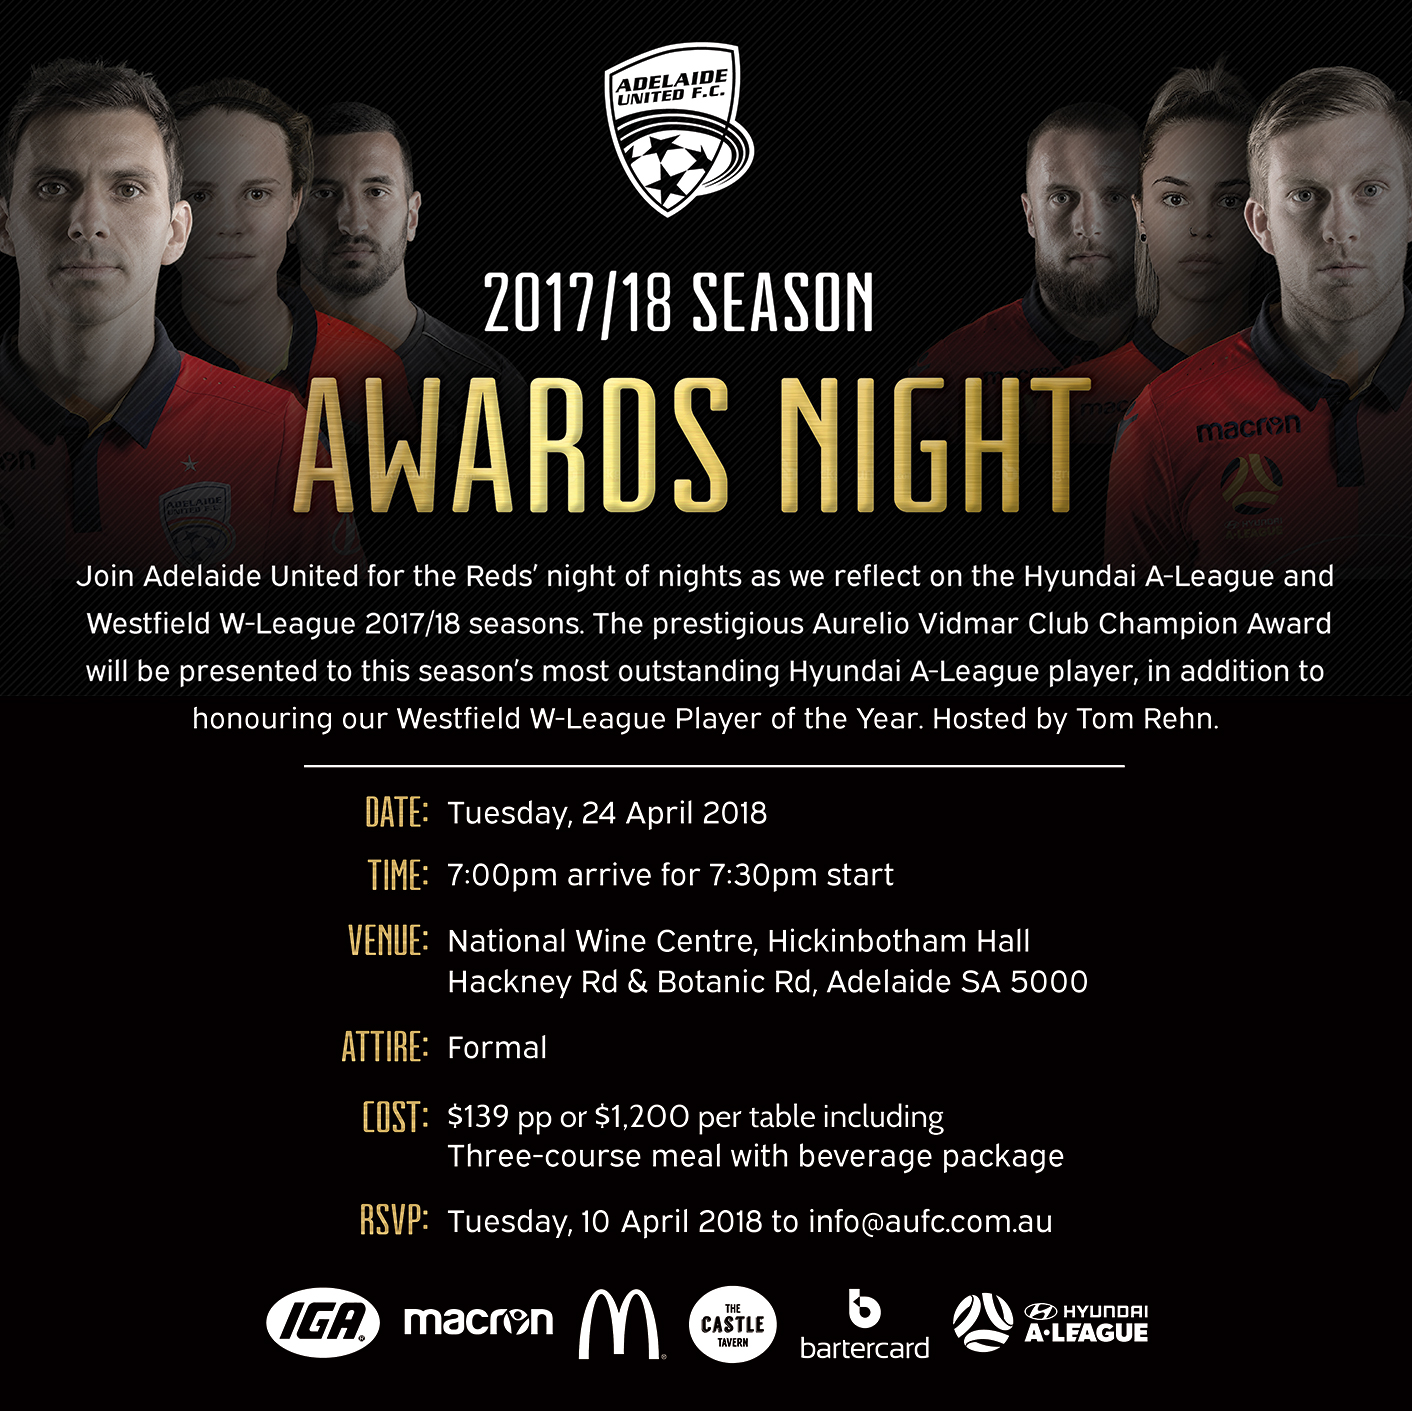 2017/18 Adelaide United Awards Night